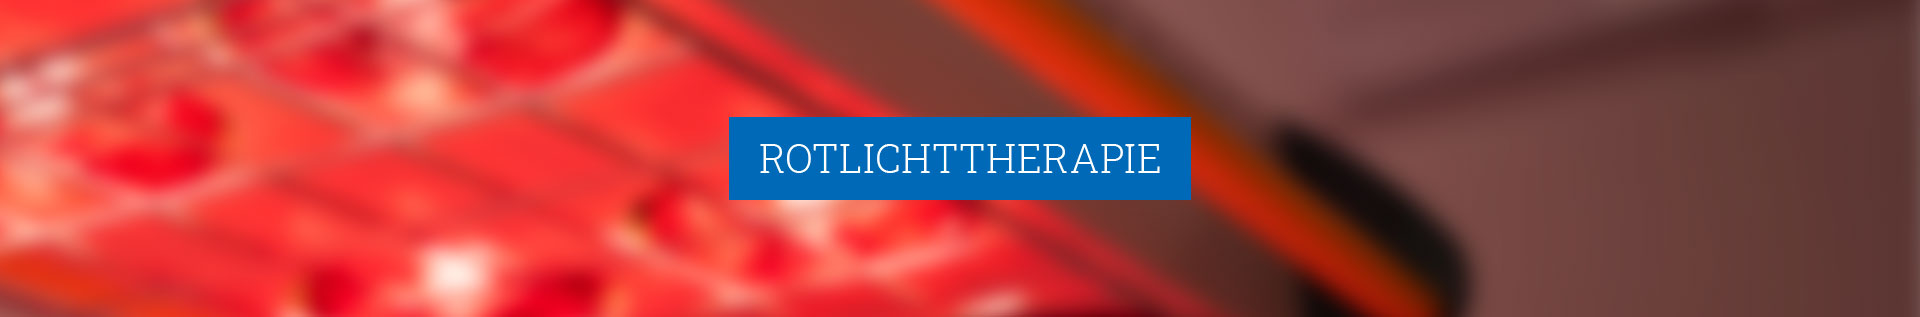 Rotlichttherapie – Therapiezentrum Stricker